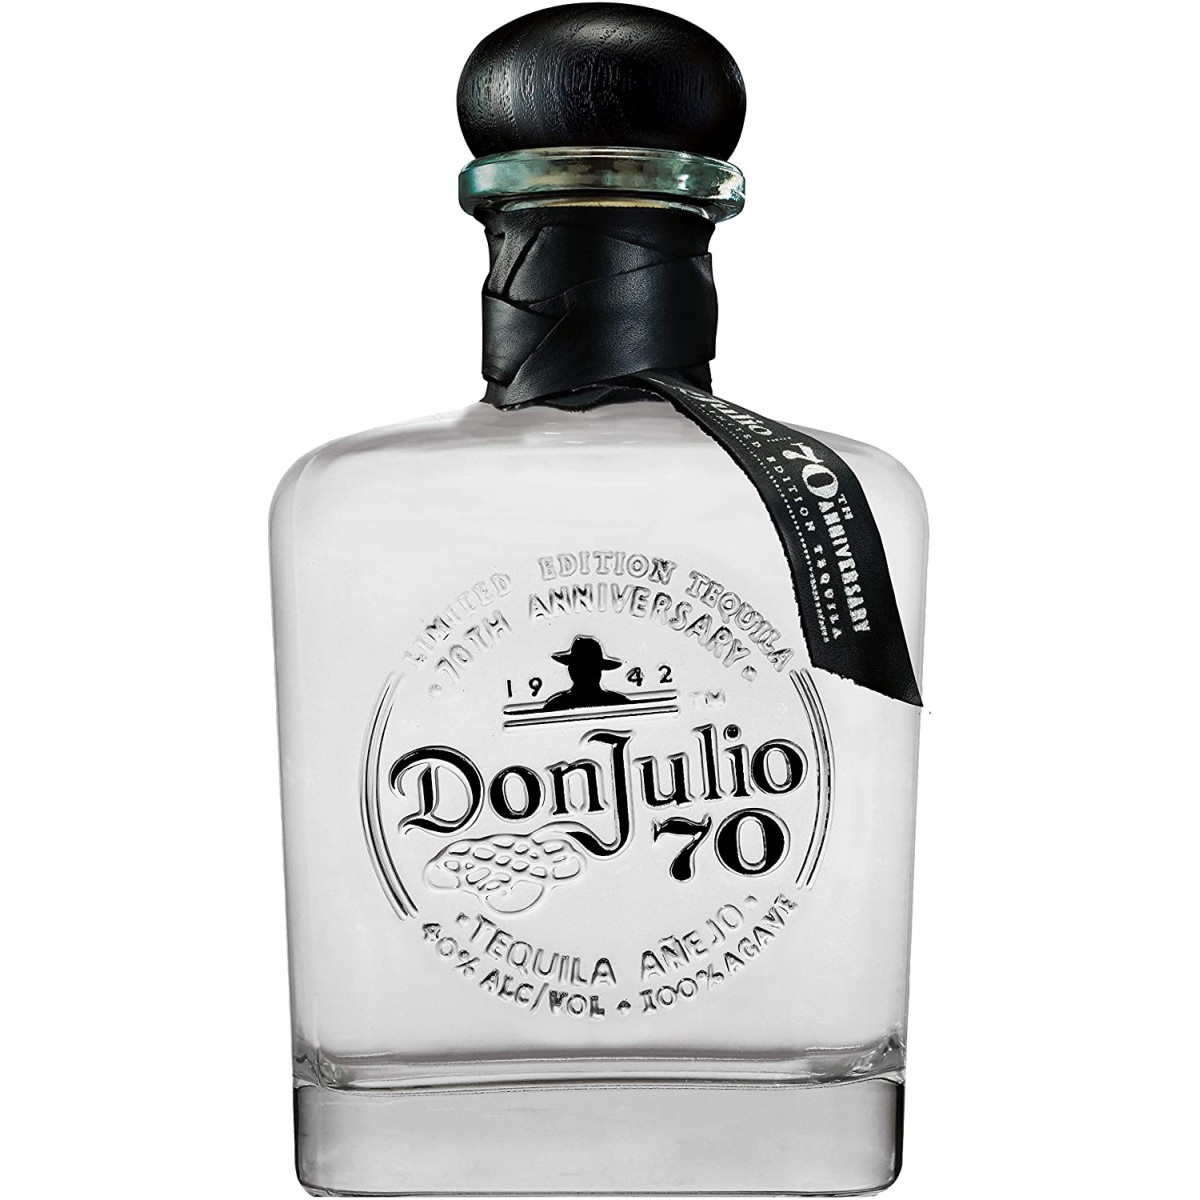 Tequila Don Julio 70 Anejo, bottiglia da 700 ml, Premium tequila